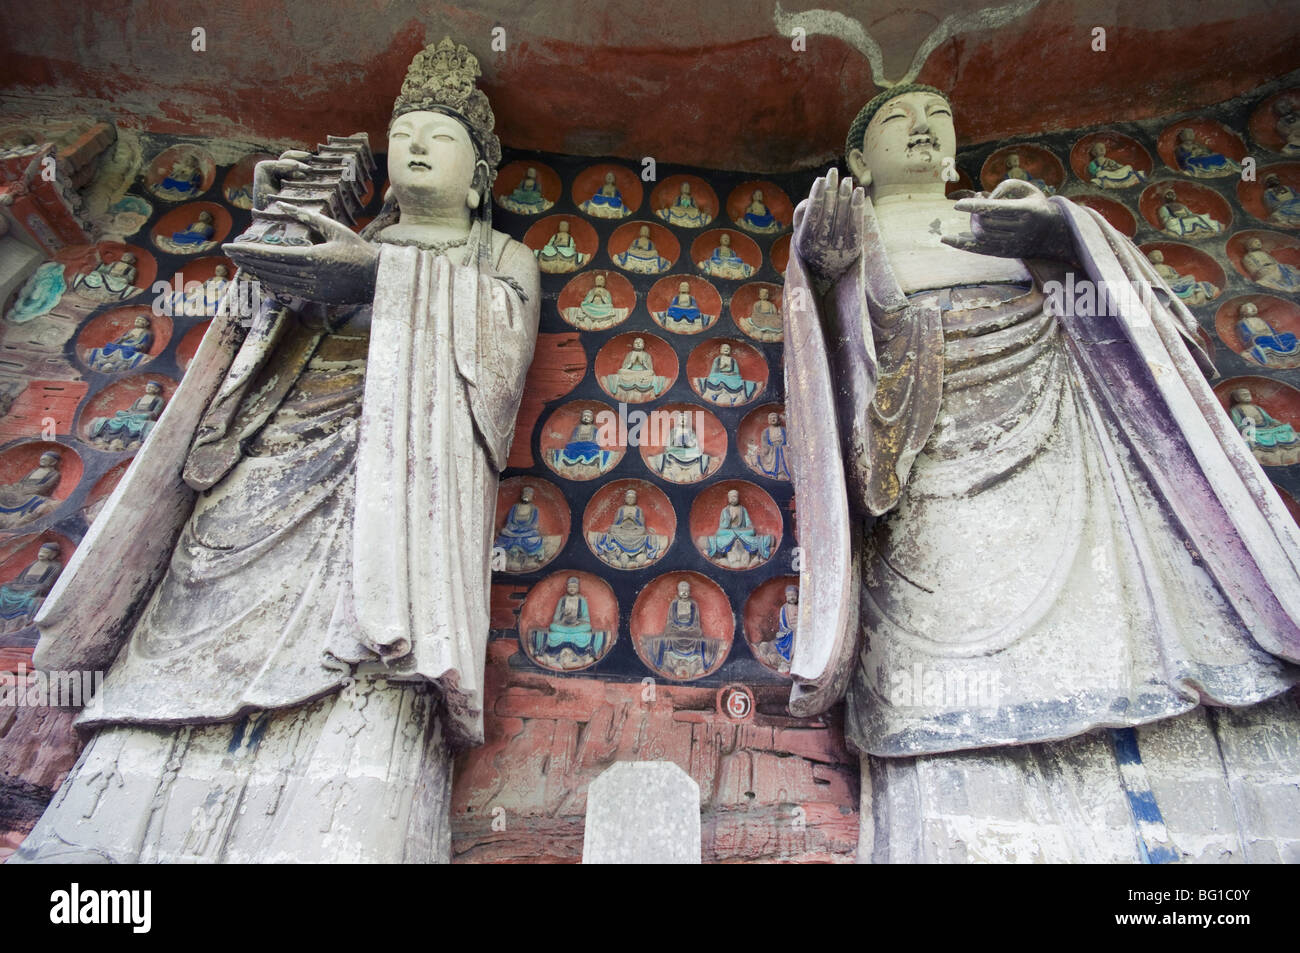 Bouddhiste de Dazu rock sculptures, Site du patrimoine mondial de l'UNESCO, la municipalité de Chongqing, Chine, Asie Banque D'Images